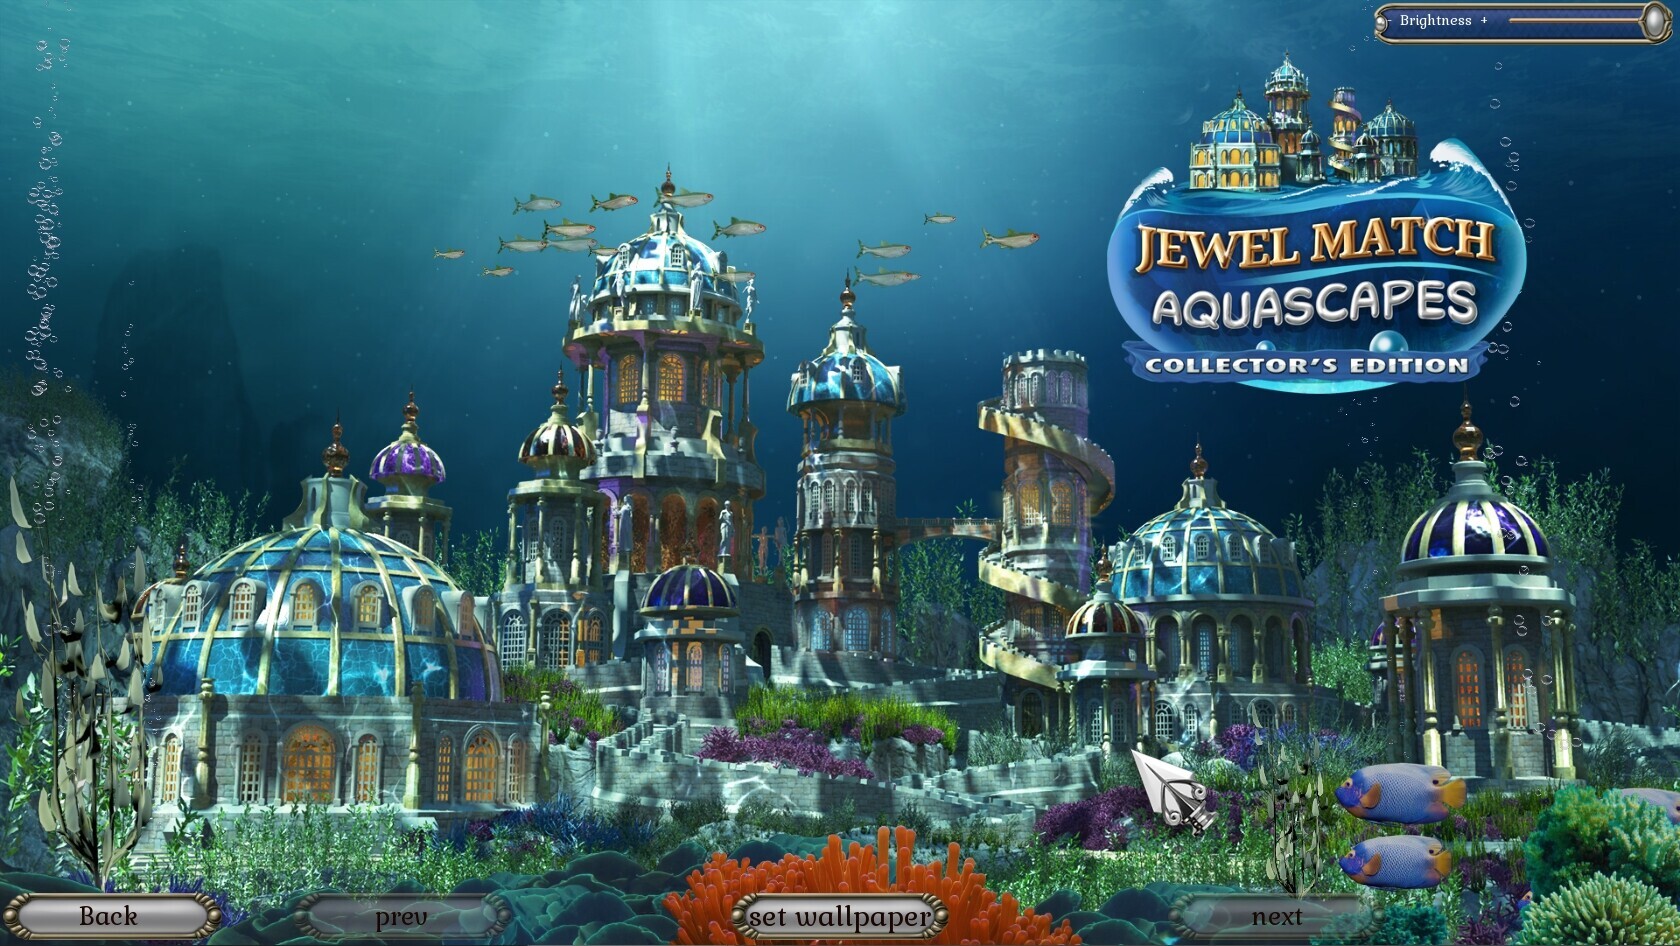 Jewel match. Игра три в ряд в подводном мире. Aquascapes Collector's Edition. Акваскейп игра. Джевел матч: Королевский.